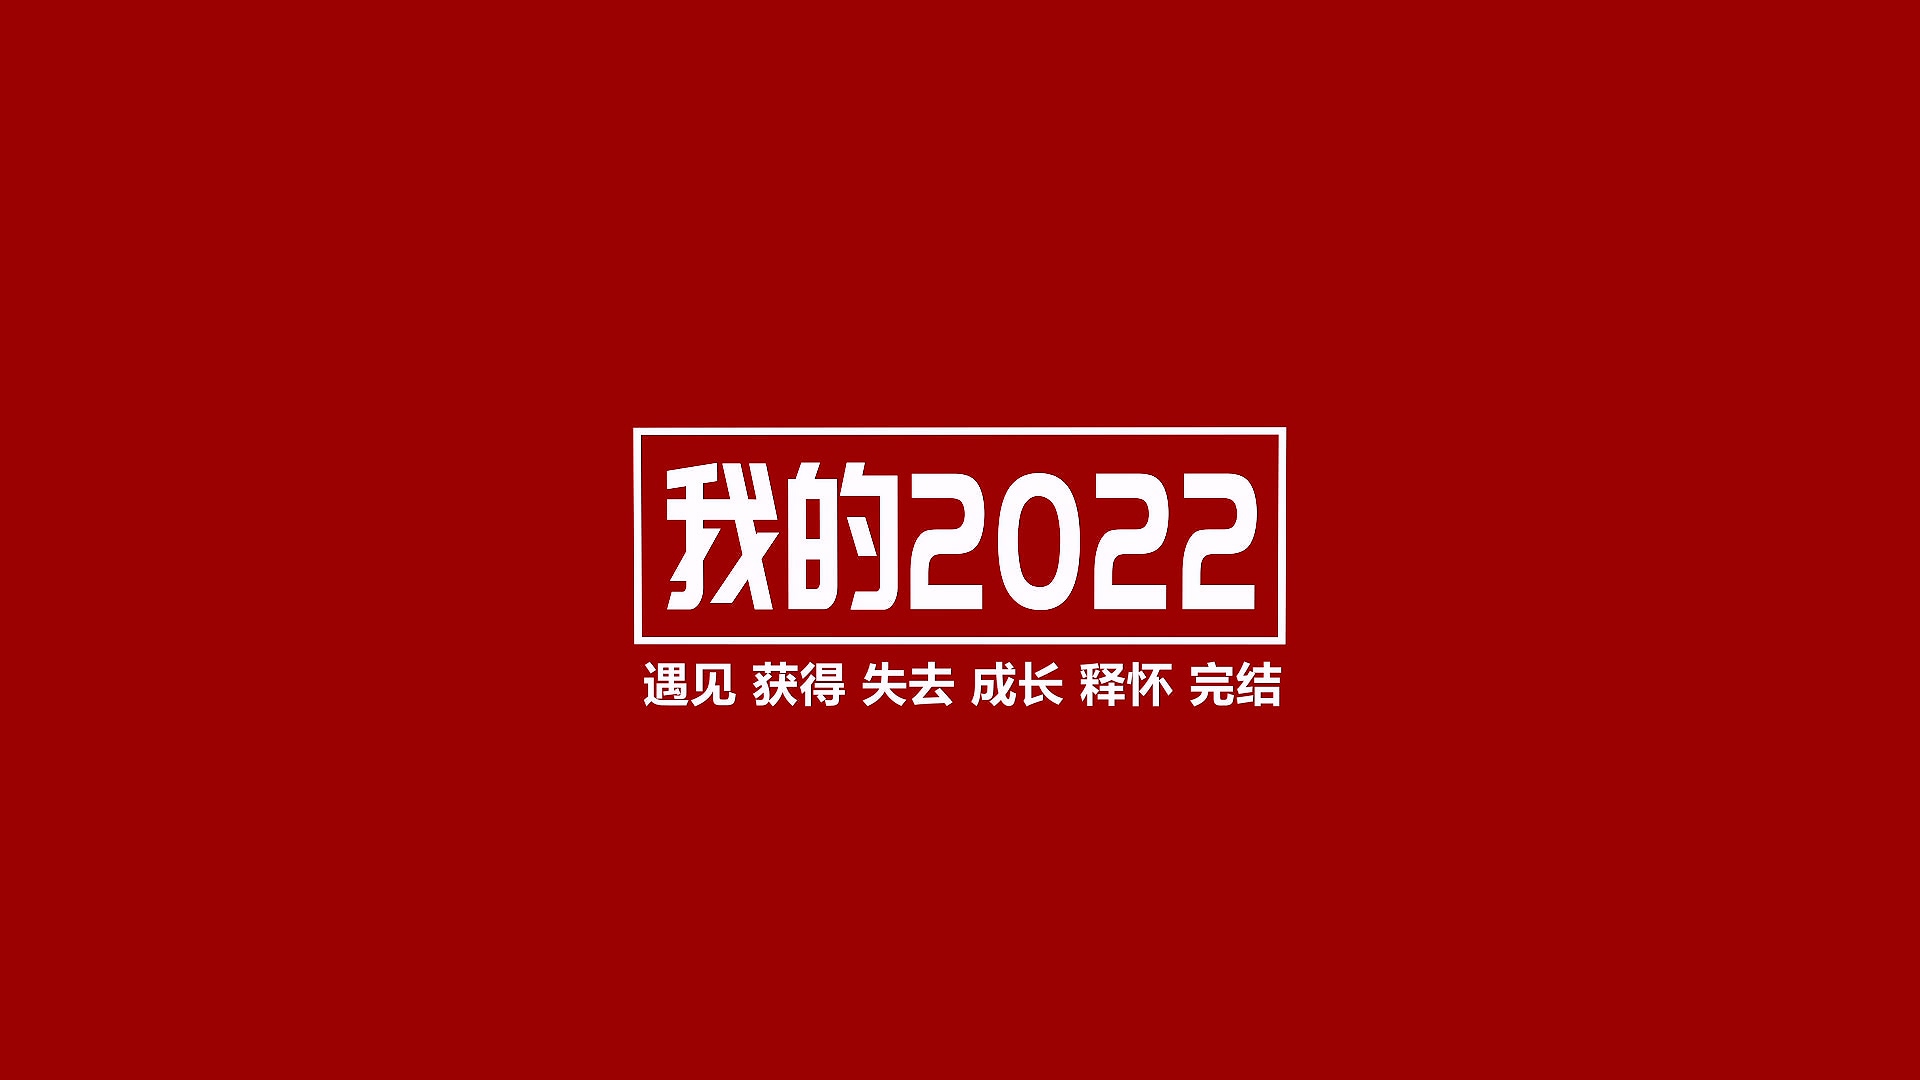 青岛黄海学院2022年终总结视频《我的2022》